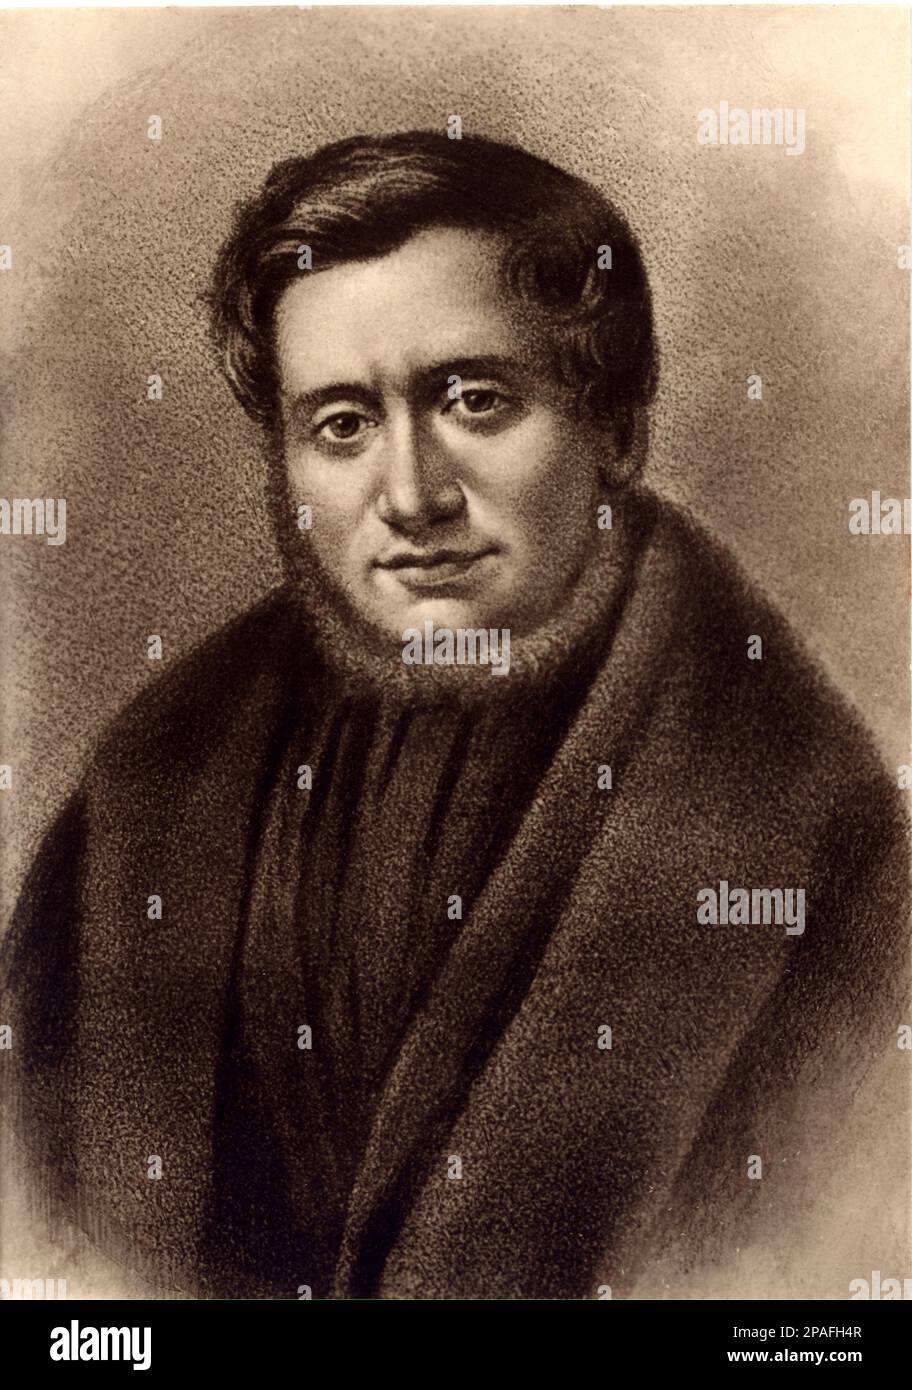 PIERO MARONCELLI ( 1795 - 1846 ) war ein italienischer Schriftsteller, Musikkomponist und Patriot . Freund der Komponisten Gaetano Donizetti und Giovanni Paisiello in Neapel. Autor des Buches ADDIZIONI ( 1932 ) , wie die sucht nach Biografiebüchern seines Freundes Silvio Pellico LE MIE PRIGIONI . Mit Pellico wurde von 1822 bis 1830 in Spielberg , Brno , inhaftiert - MUSICA CLASSICA - OPERA - COMPOSITORE - MUSICISTA - MEMORIALISTA - LETTERATURA - Portrait - ritratto - letterato - TEATRO - THEATRE - patriota - Pietro - RISORGIMENTO - LETERTATO -- LITERATUR -- ARCHIVIO GBB Stockfoto